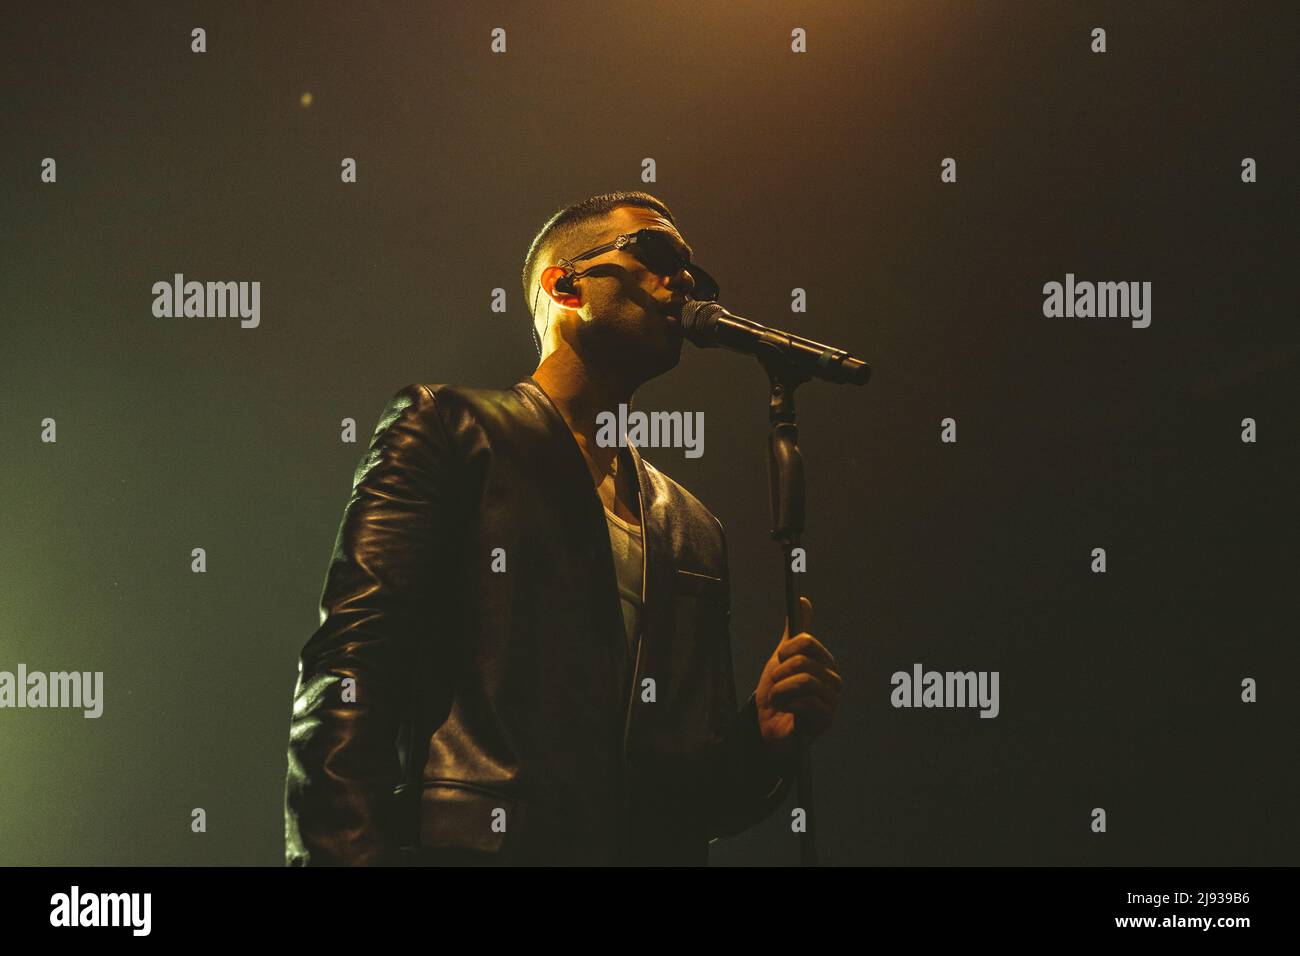 18/05/2022 - Italian singer MAHMOOD playing live at Alcatraz Milano, Italy Stock Photo